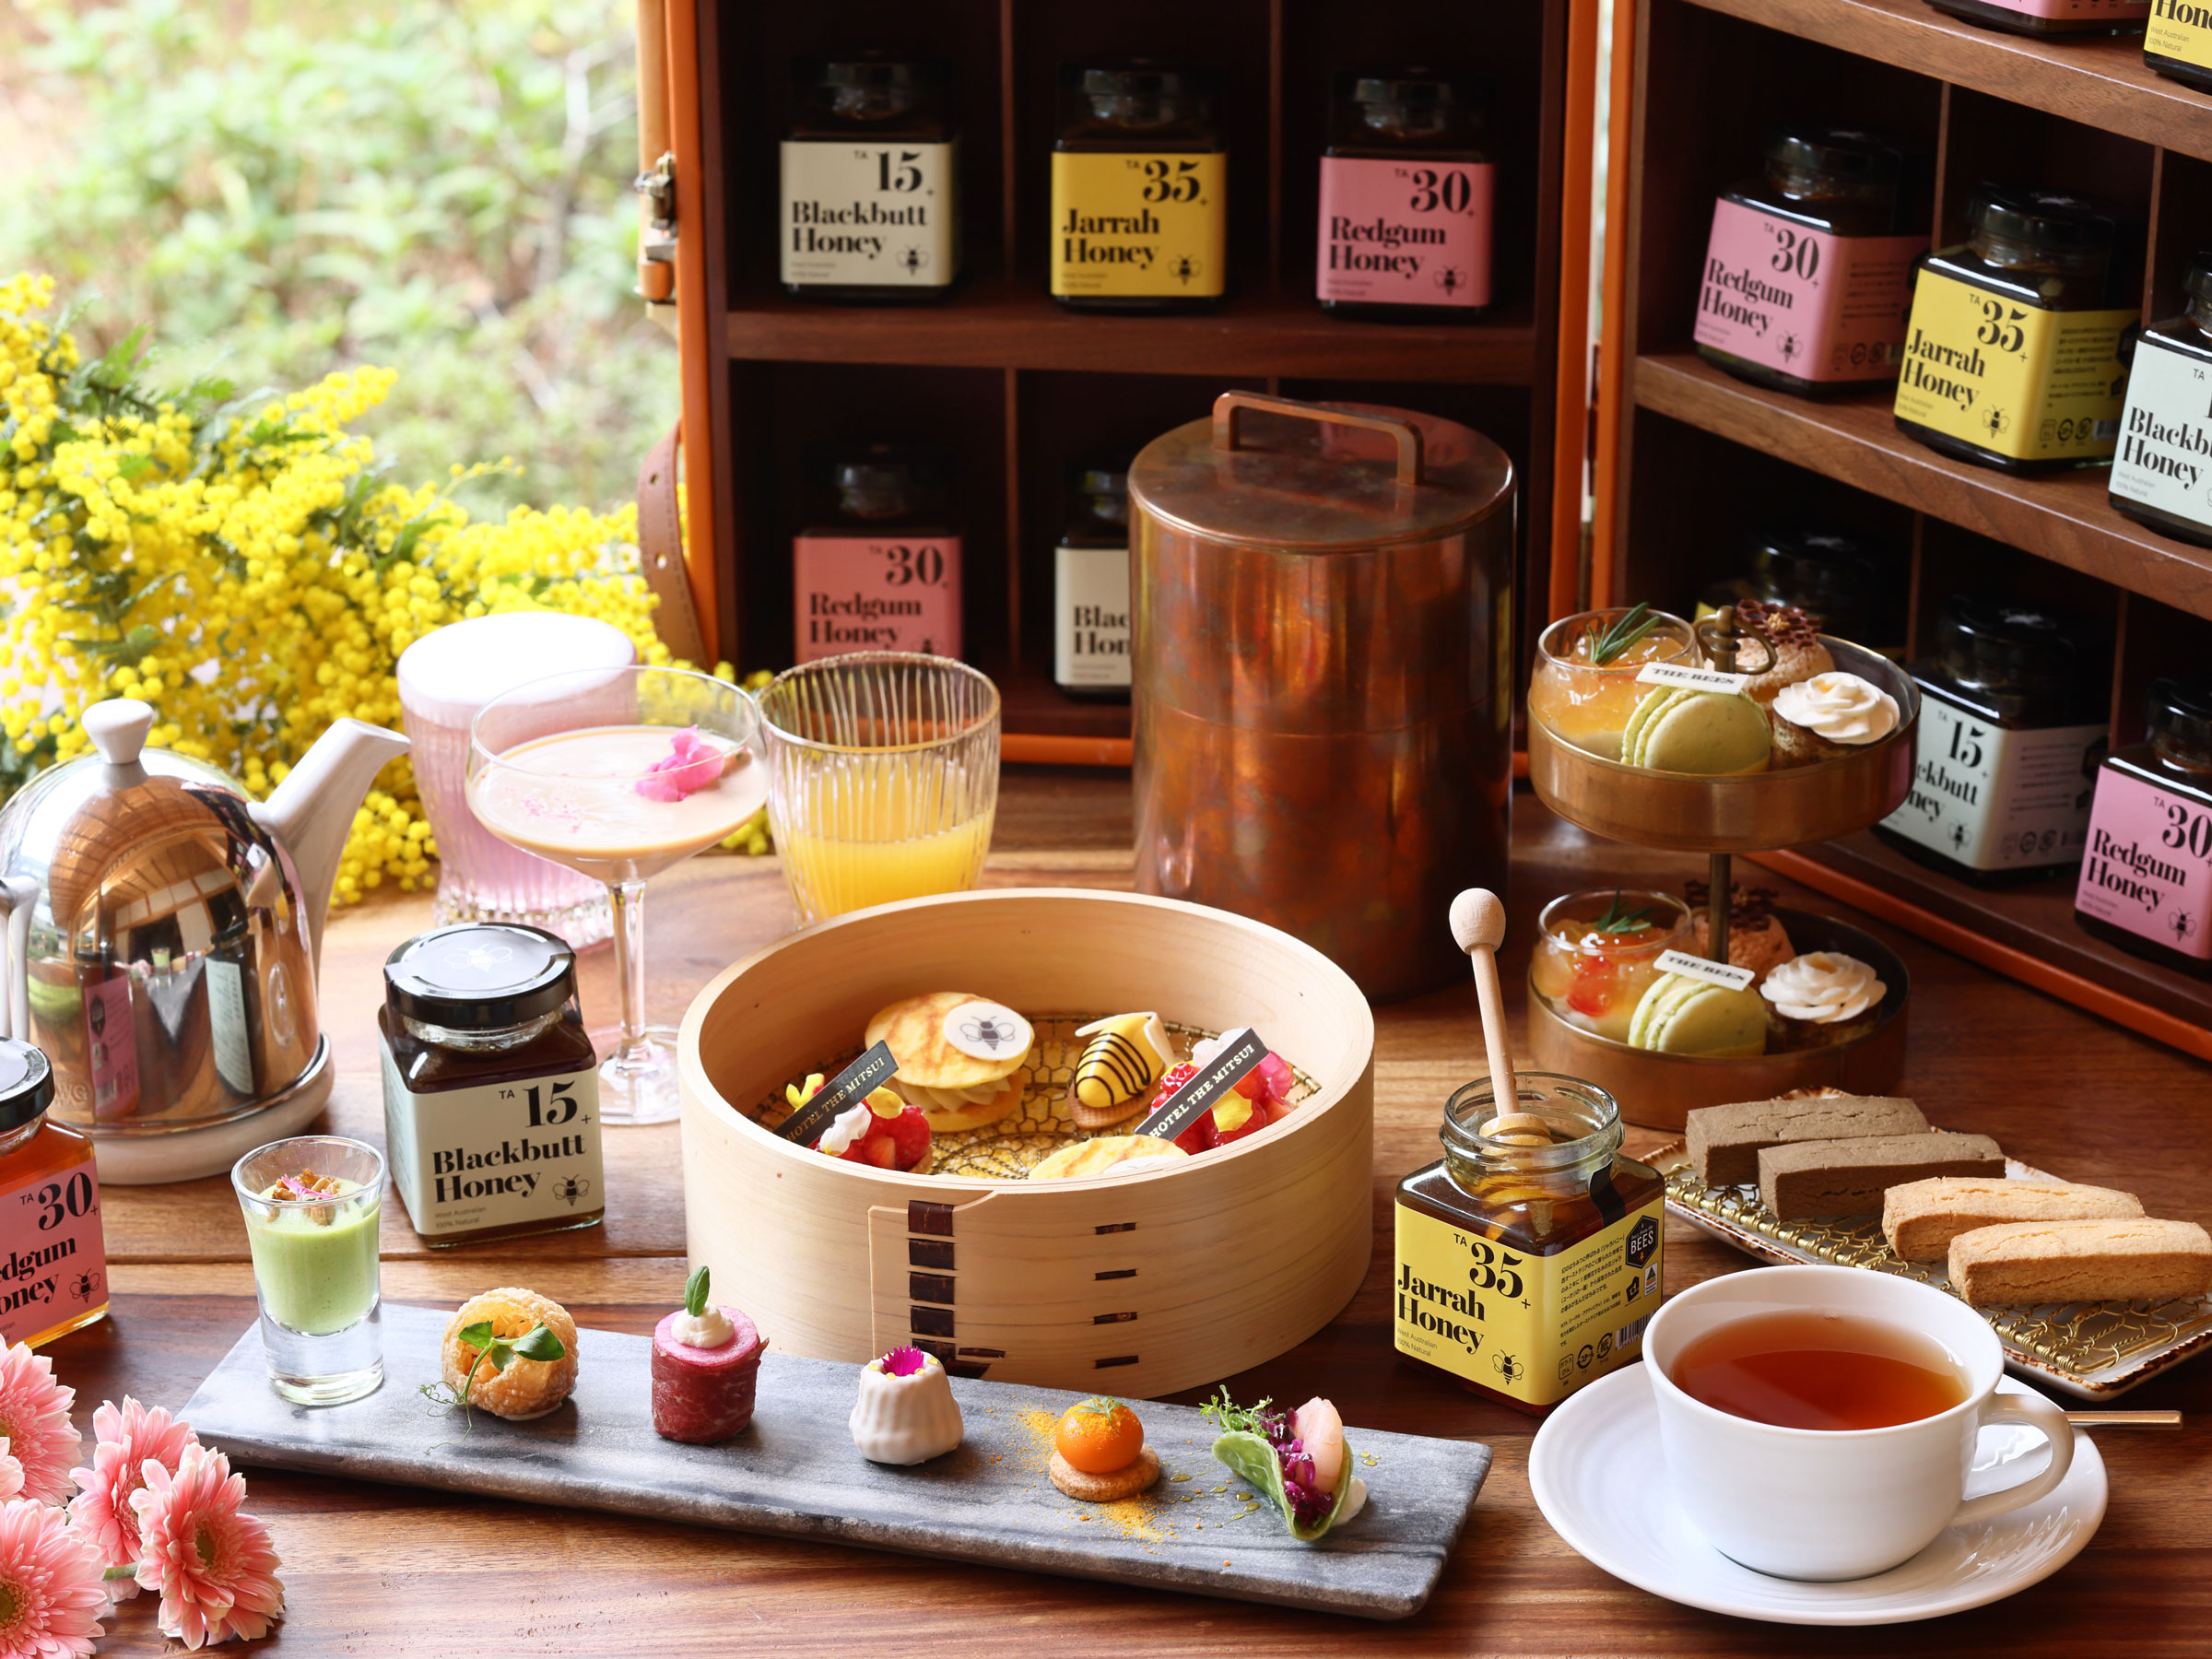 産地や風味にこだわった“はちみつ”を 贅沢に使用したアフタヌーンティー 静岡・京都・神戸のホテルで提供中！